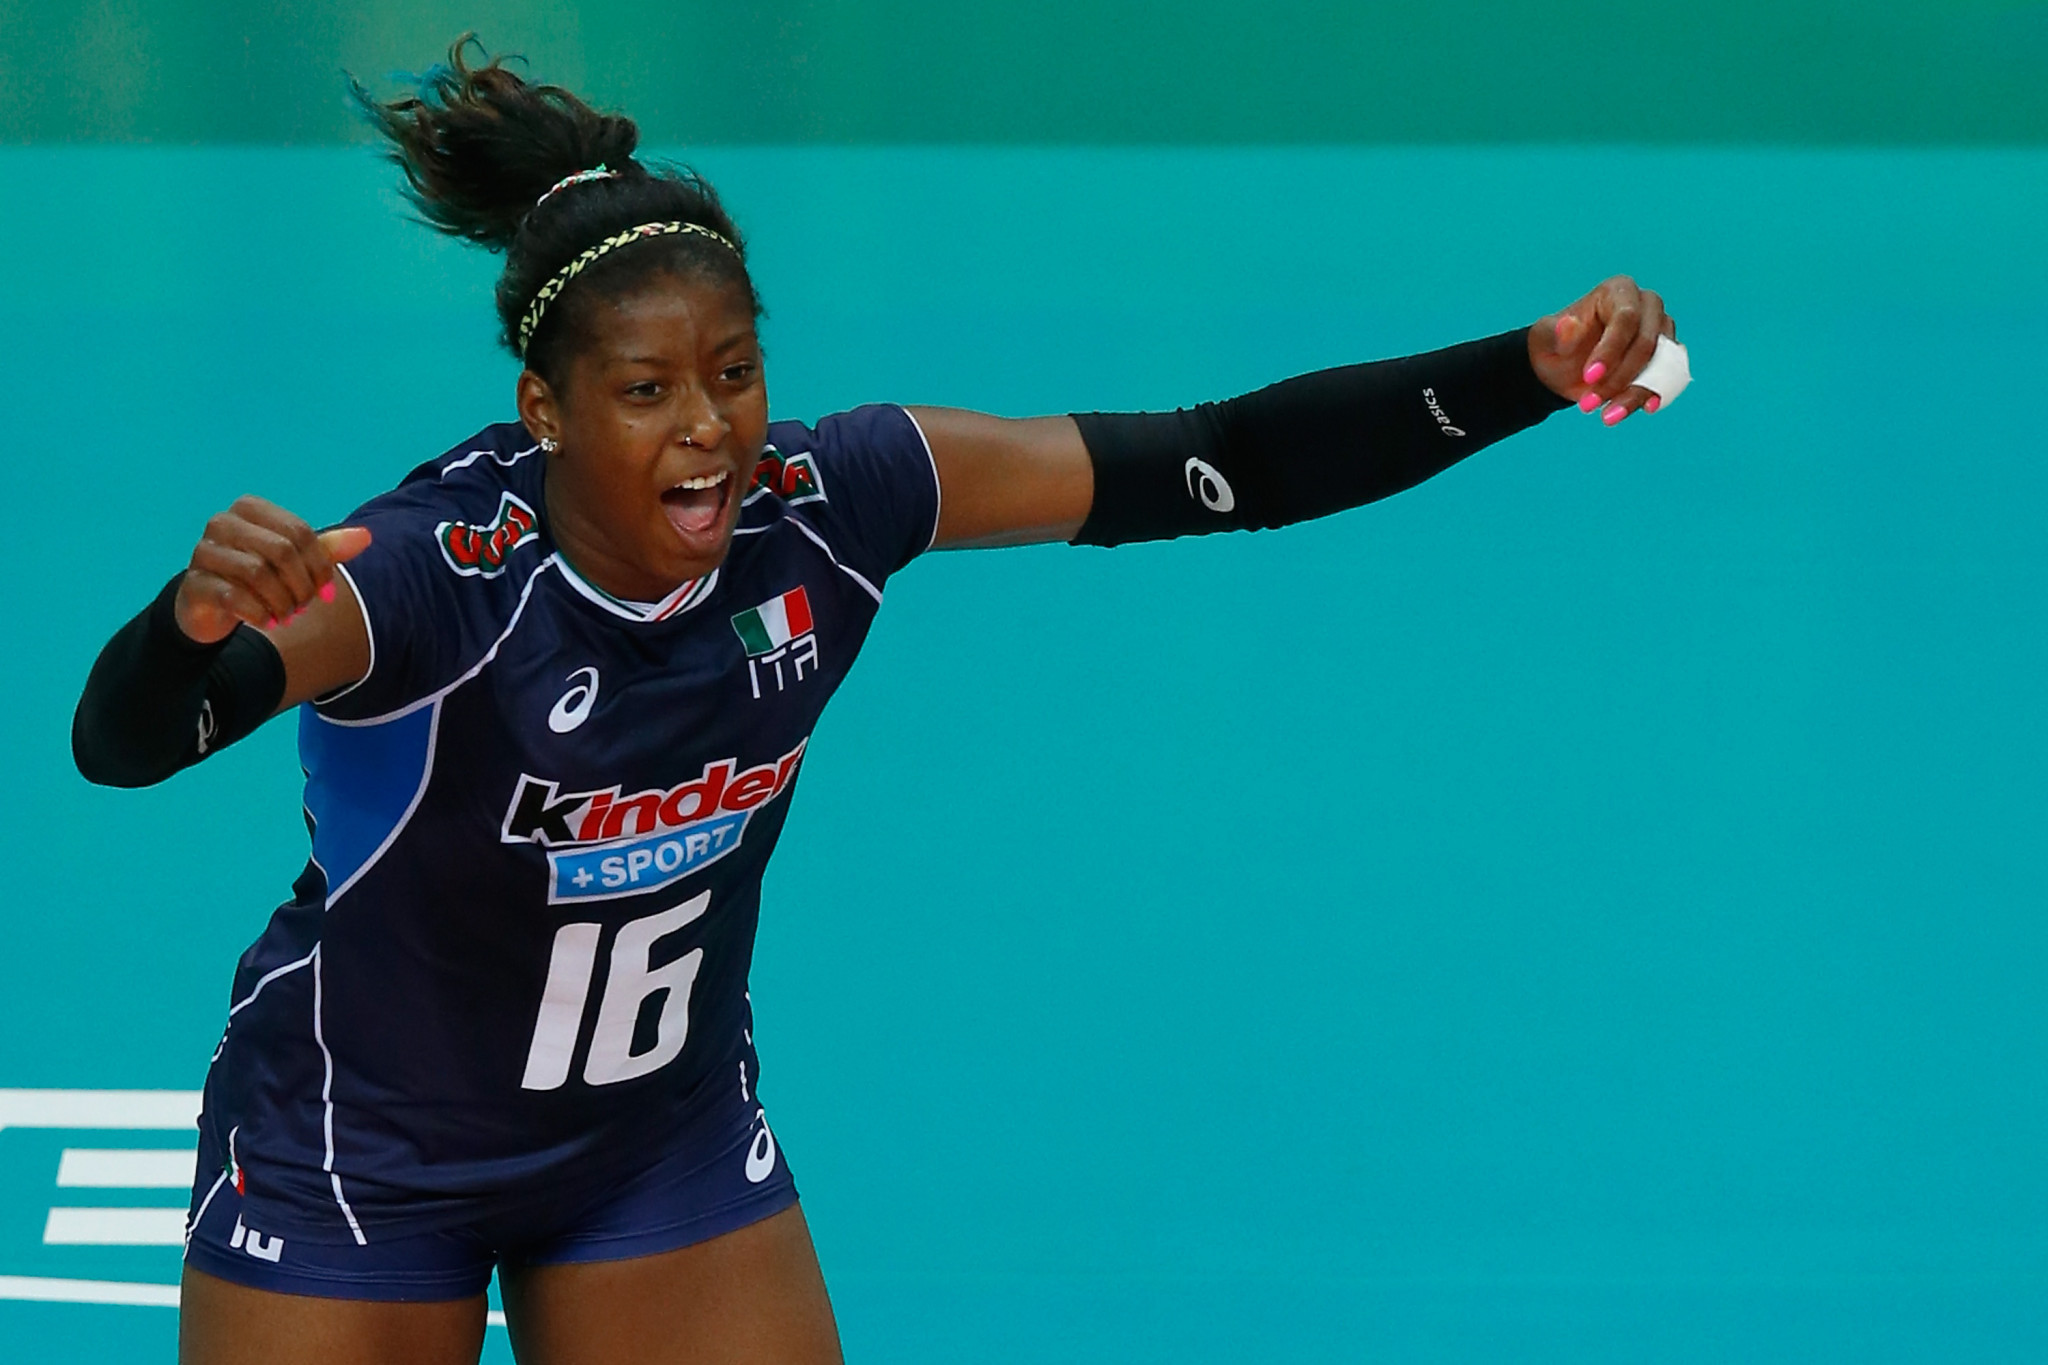 Volleyball star Sylla believes Tokyo 2020 postponement will enhance Italian team